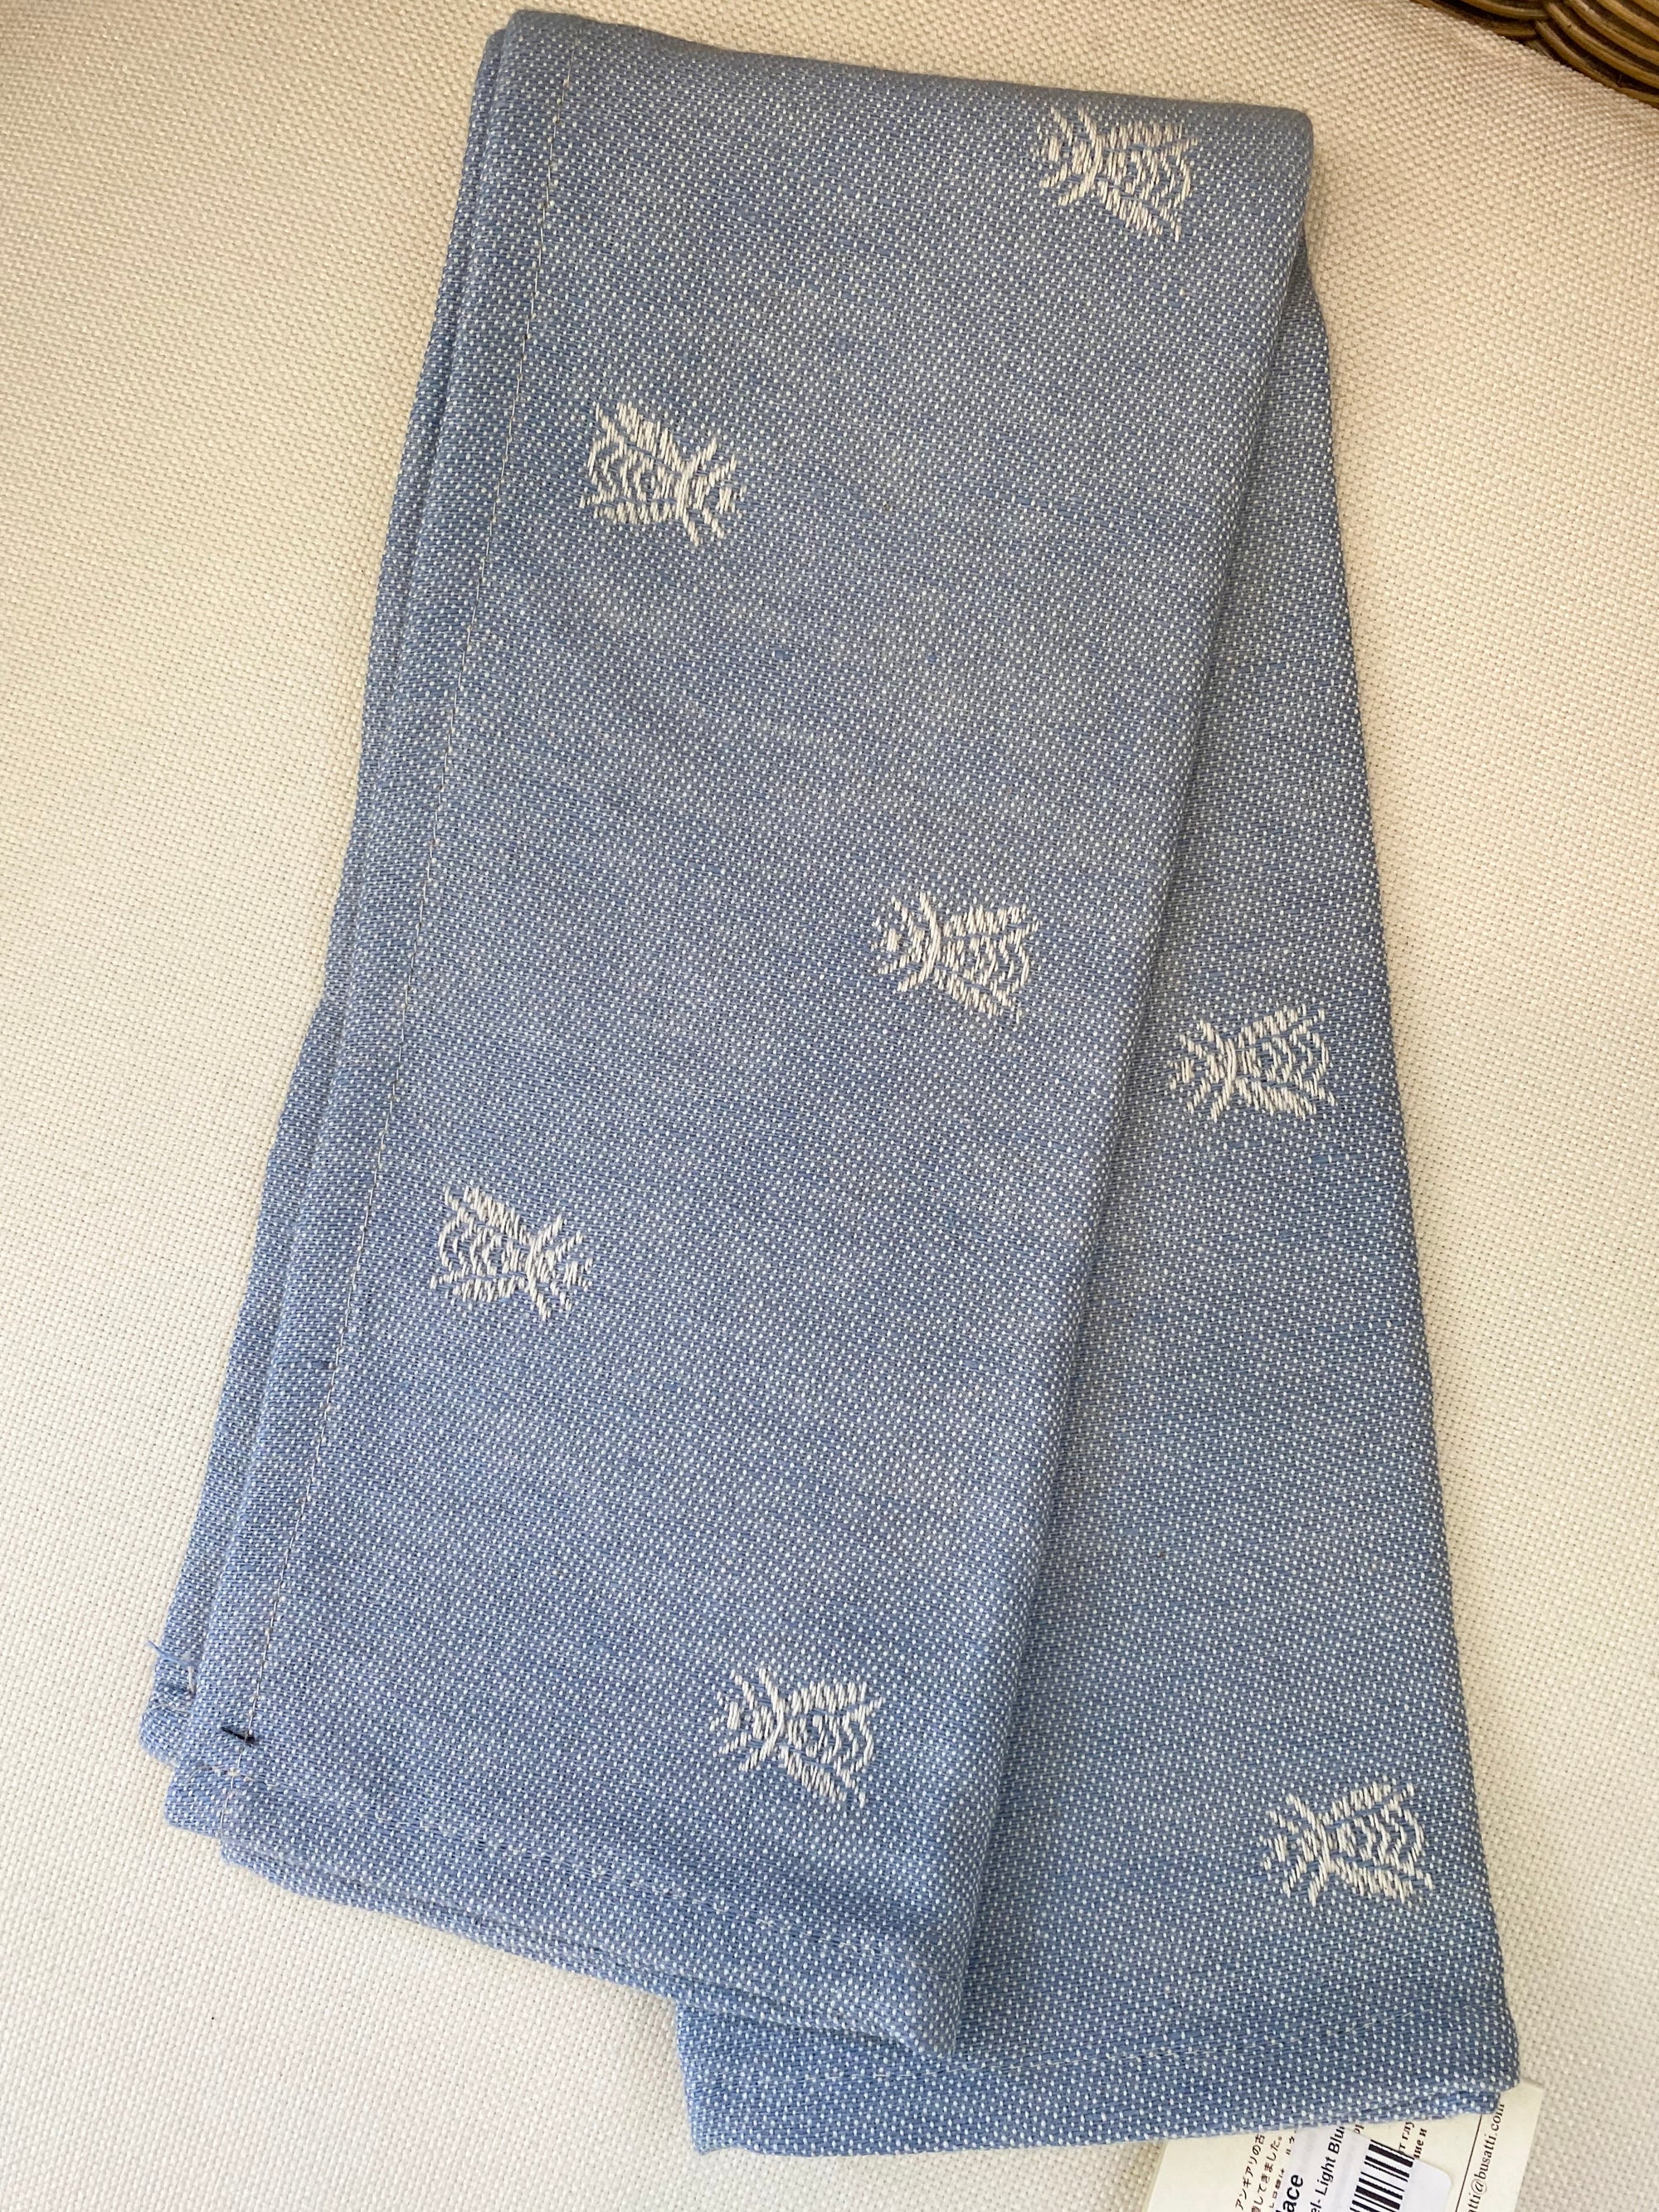 Alveare Bee Tea Towel - Light Blue